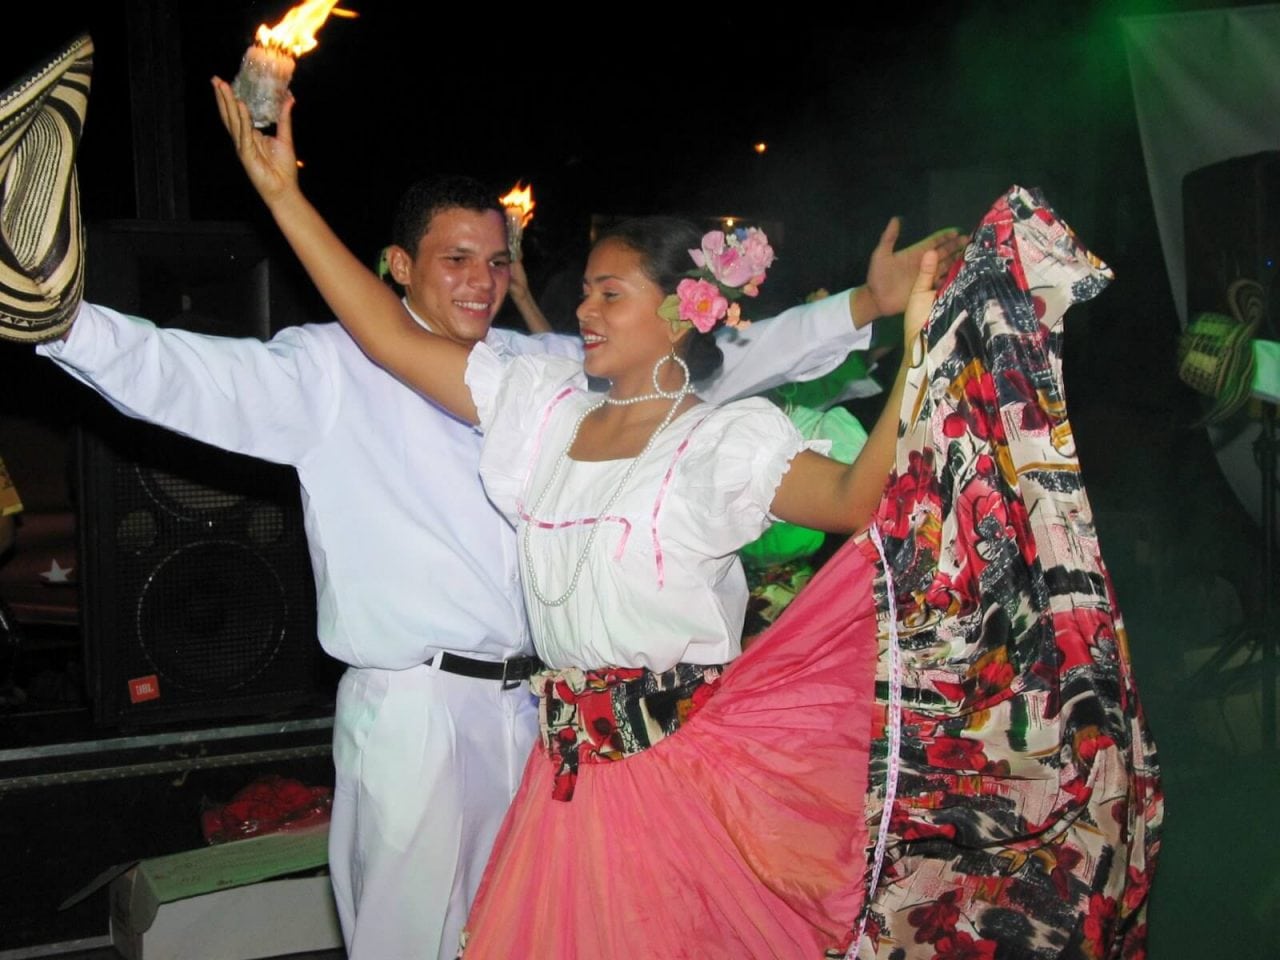 Festival del Porro de Medellín, un evento de tradición